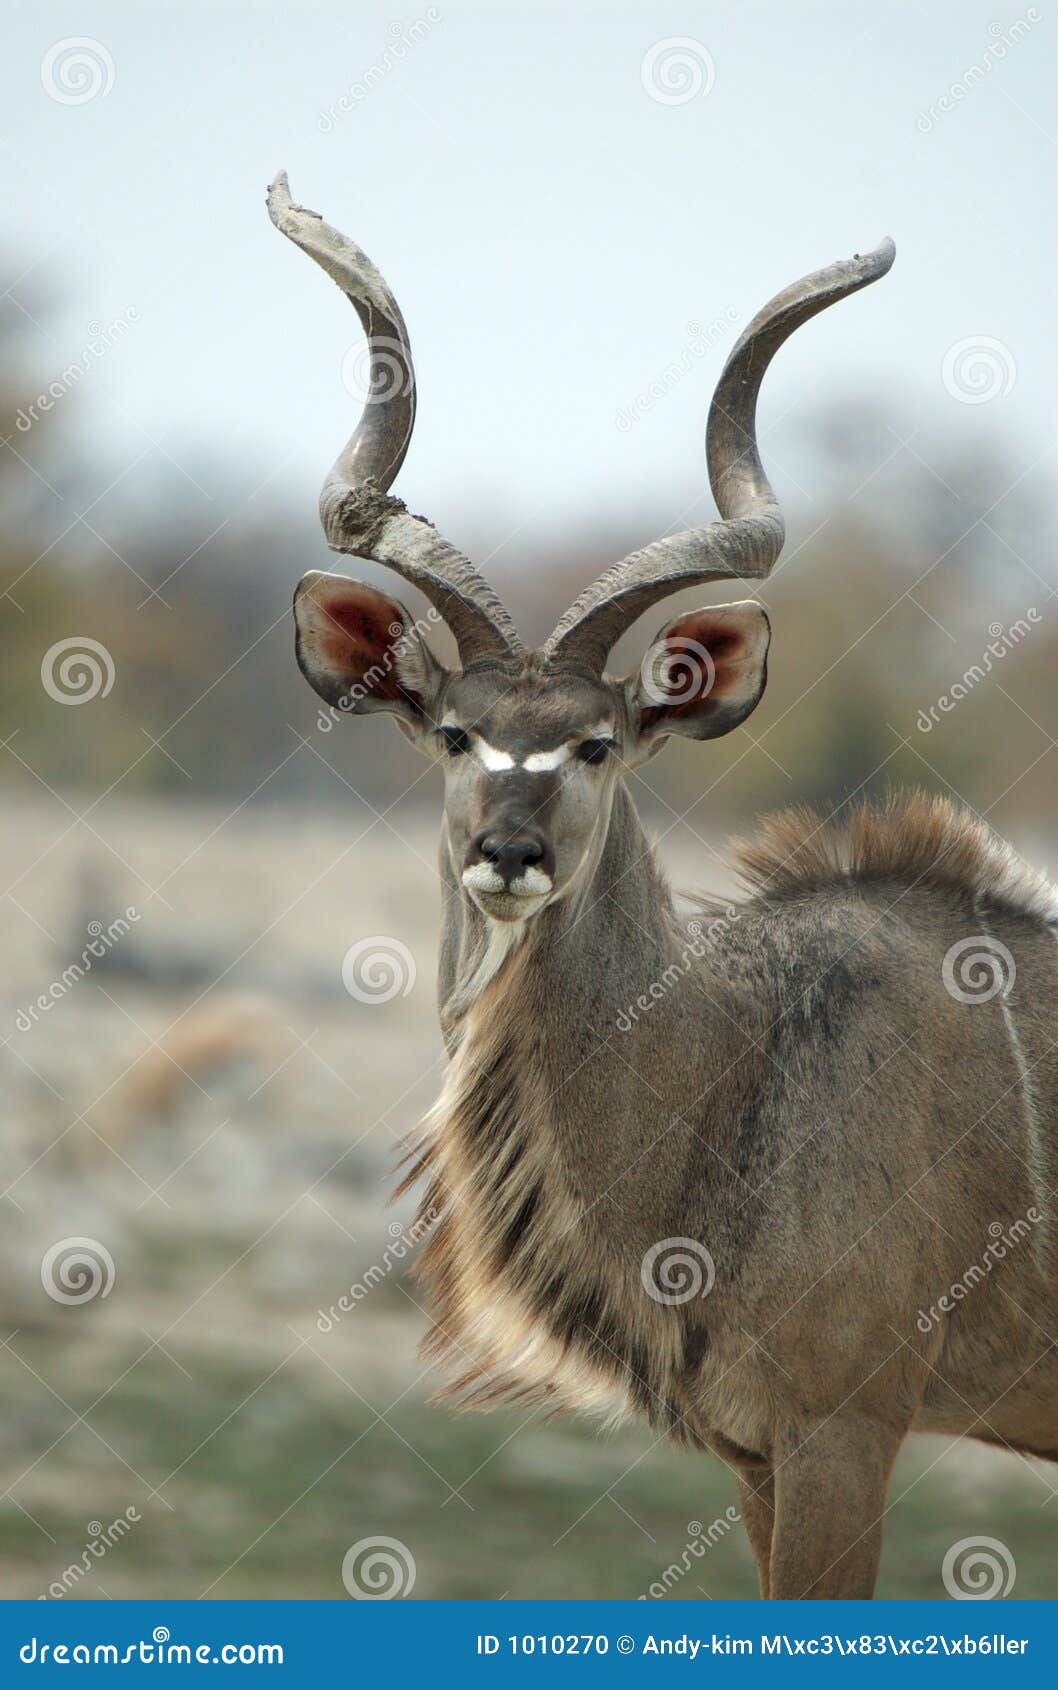 male kudu portrait